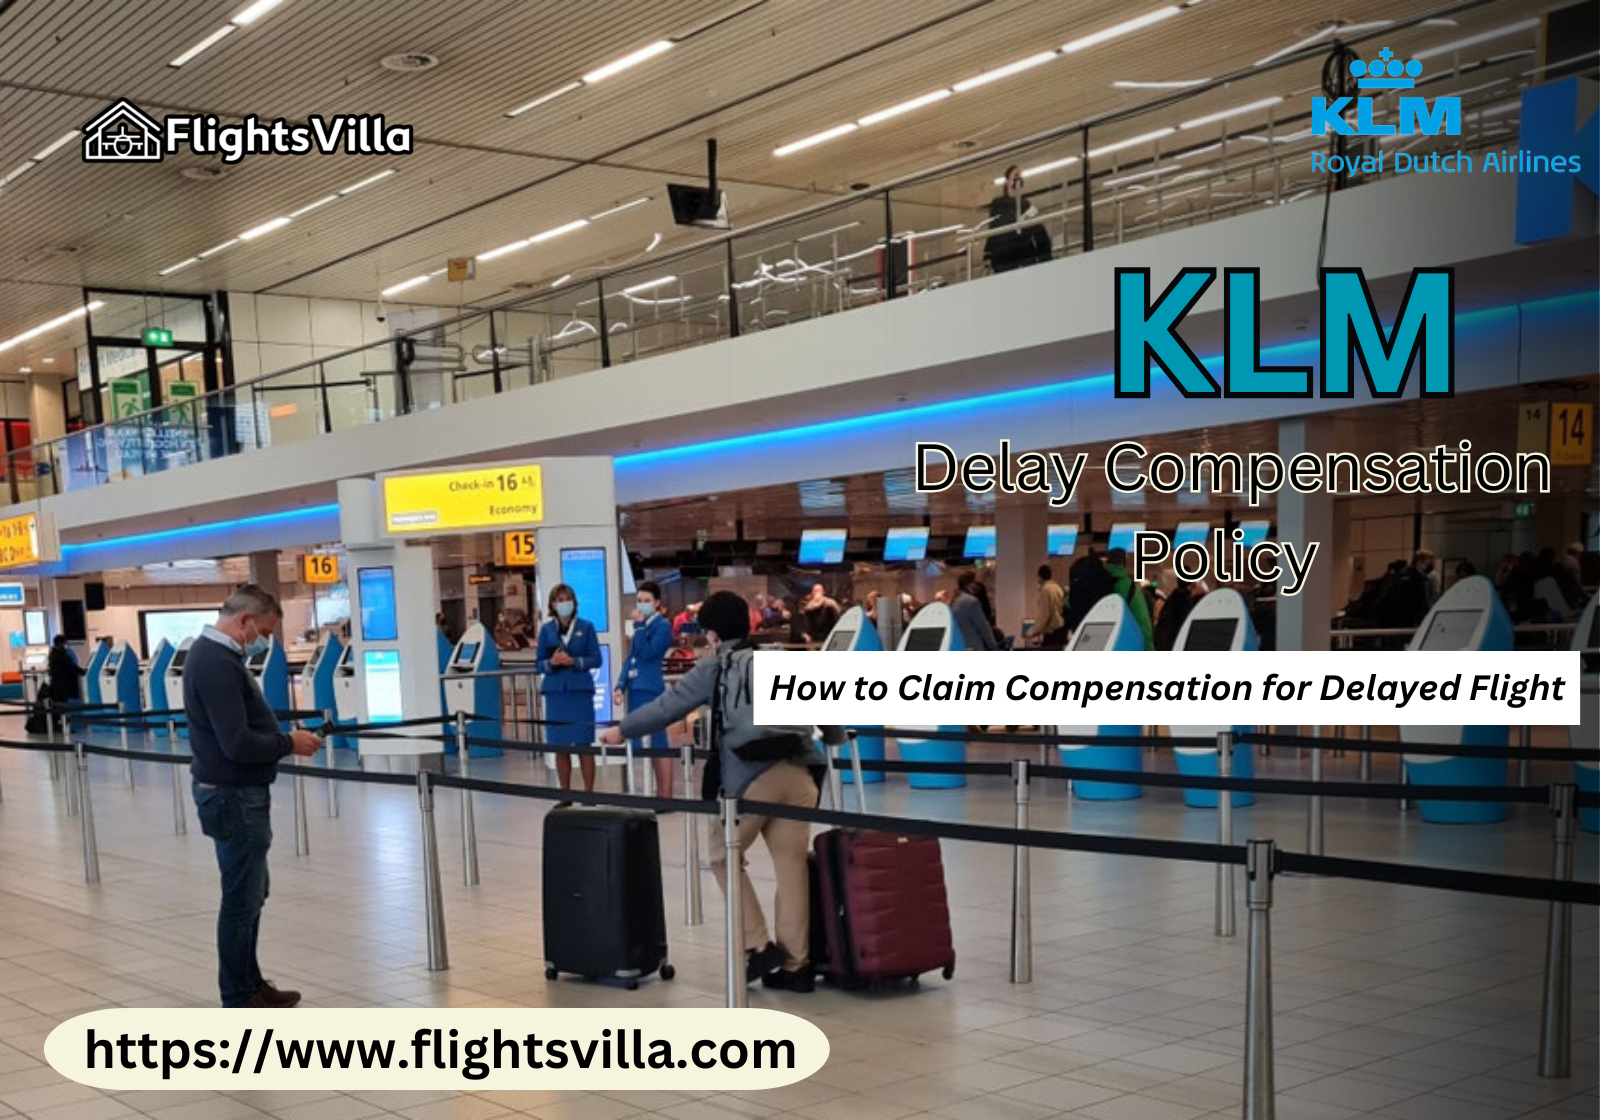 KLM Delay Compensation Policy